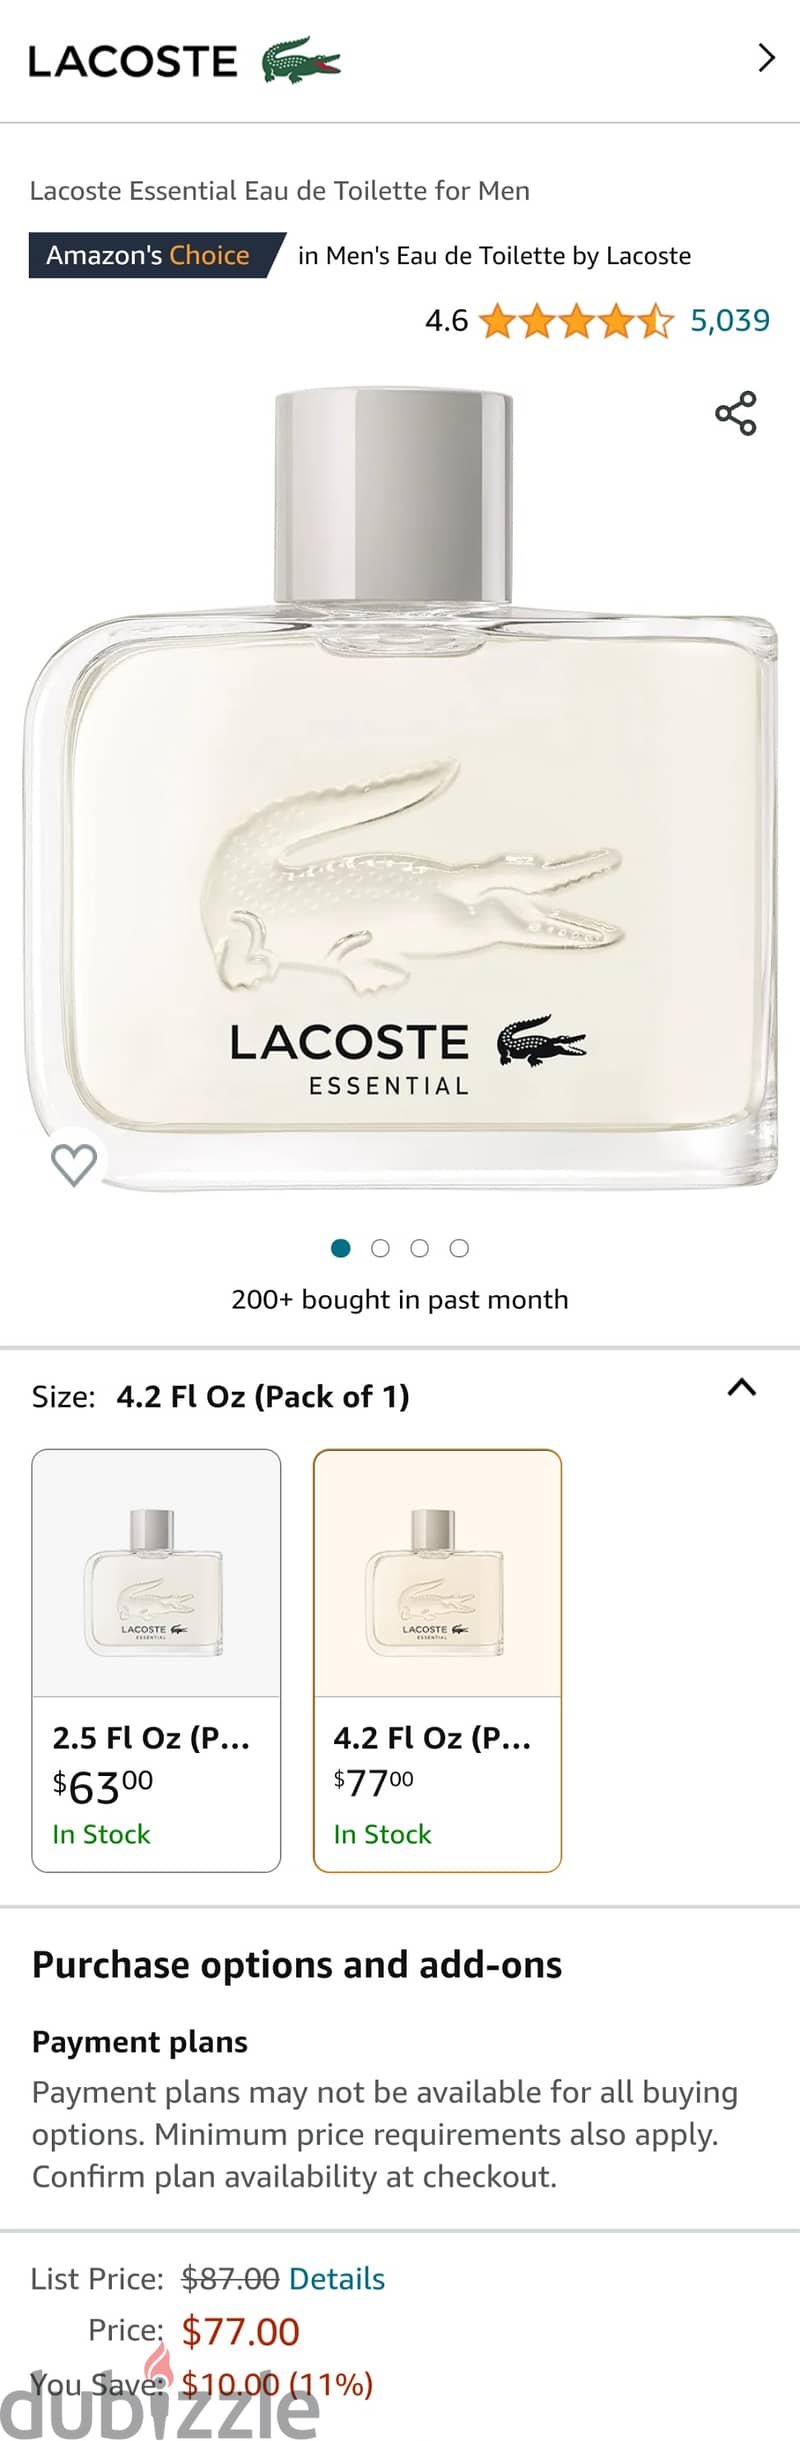 New (Sealed) 125ml. Lacoste Essential - Eau de Toilette For Men 2